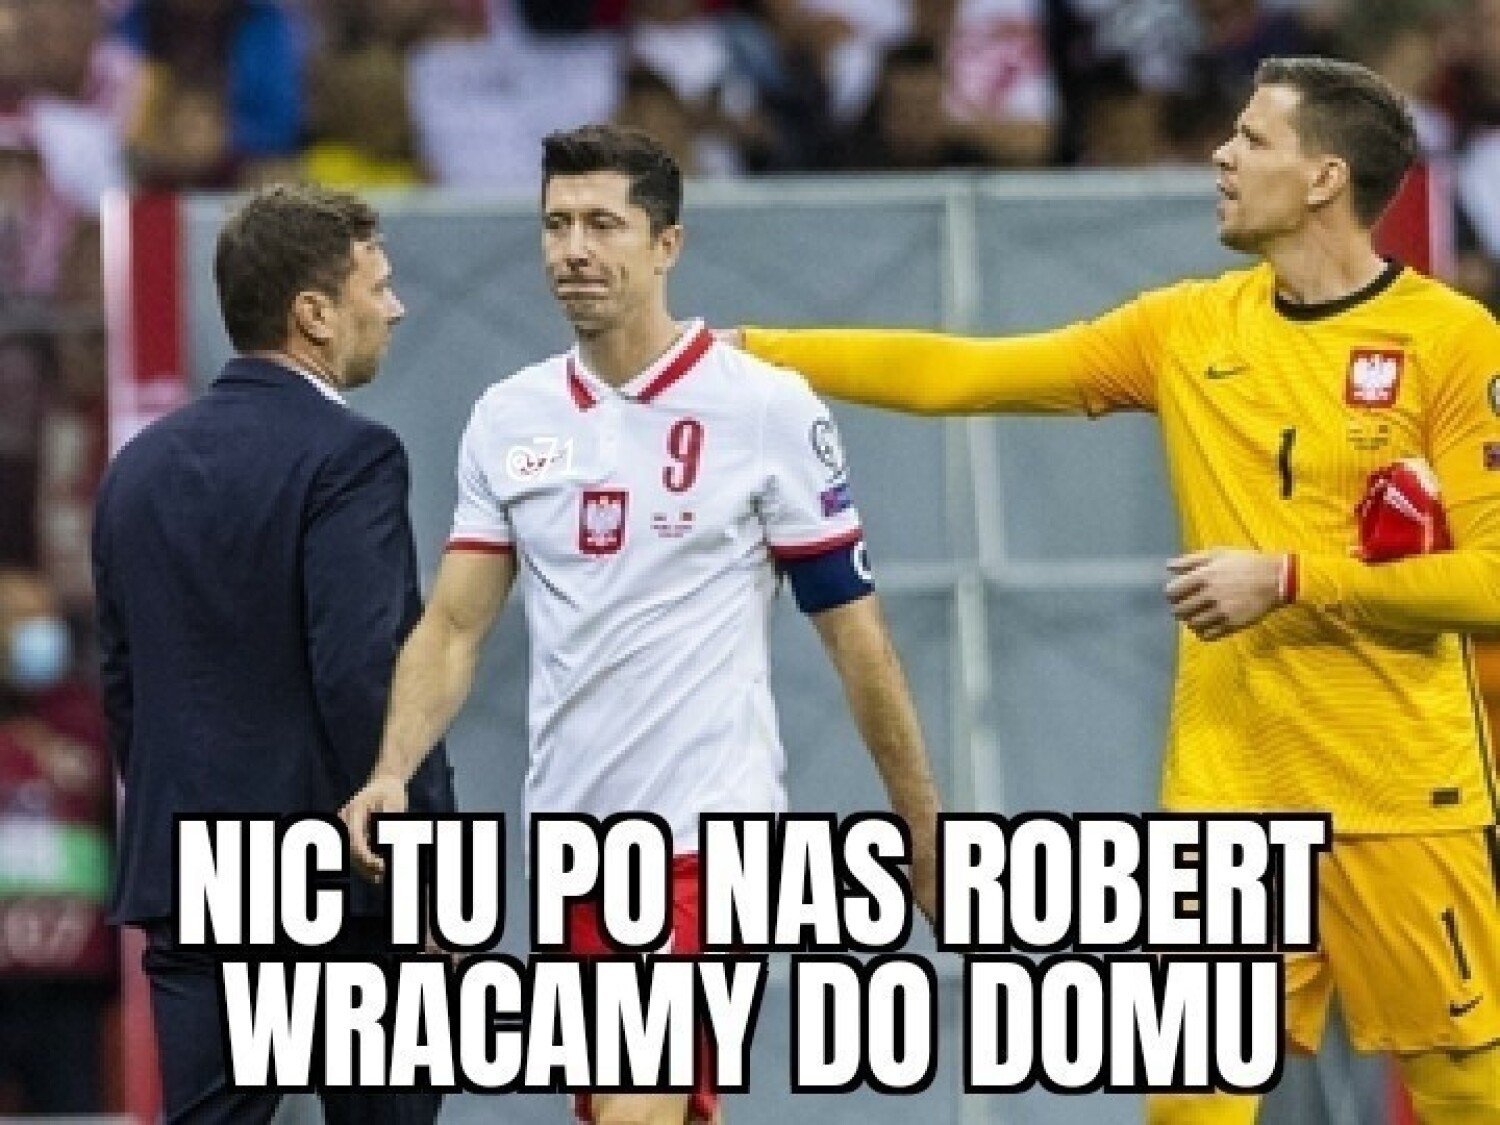 Les meilleurs mèmes après le match Pologne – France.  Vous améliorerez votre humeur.  « Rien ici pour nous Robert, on rentre à la maison »